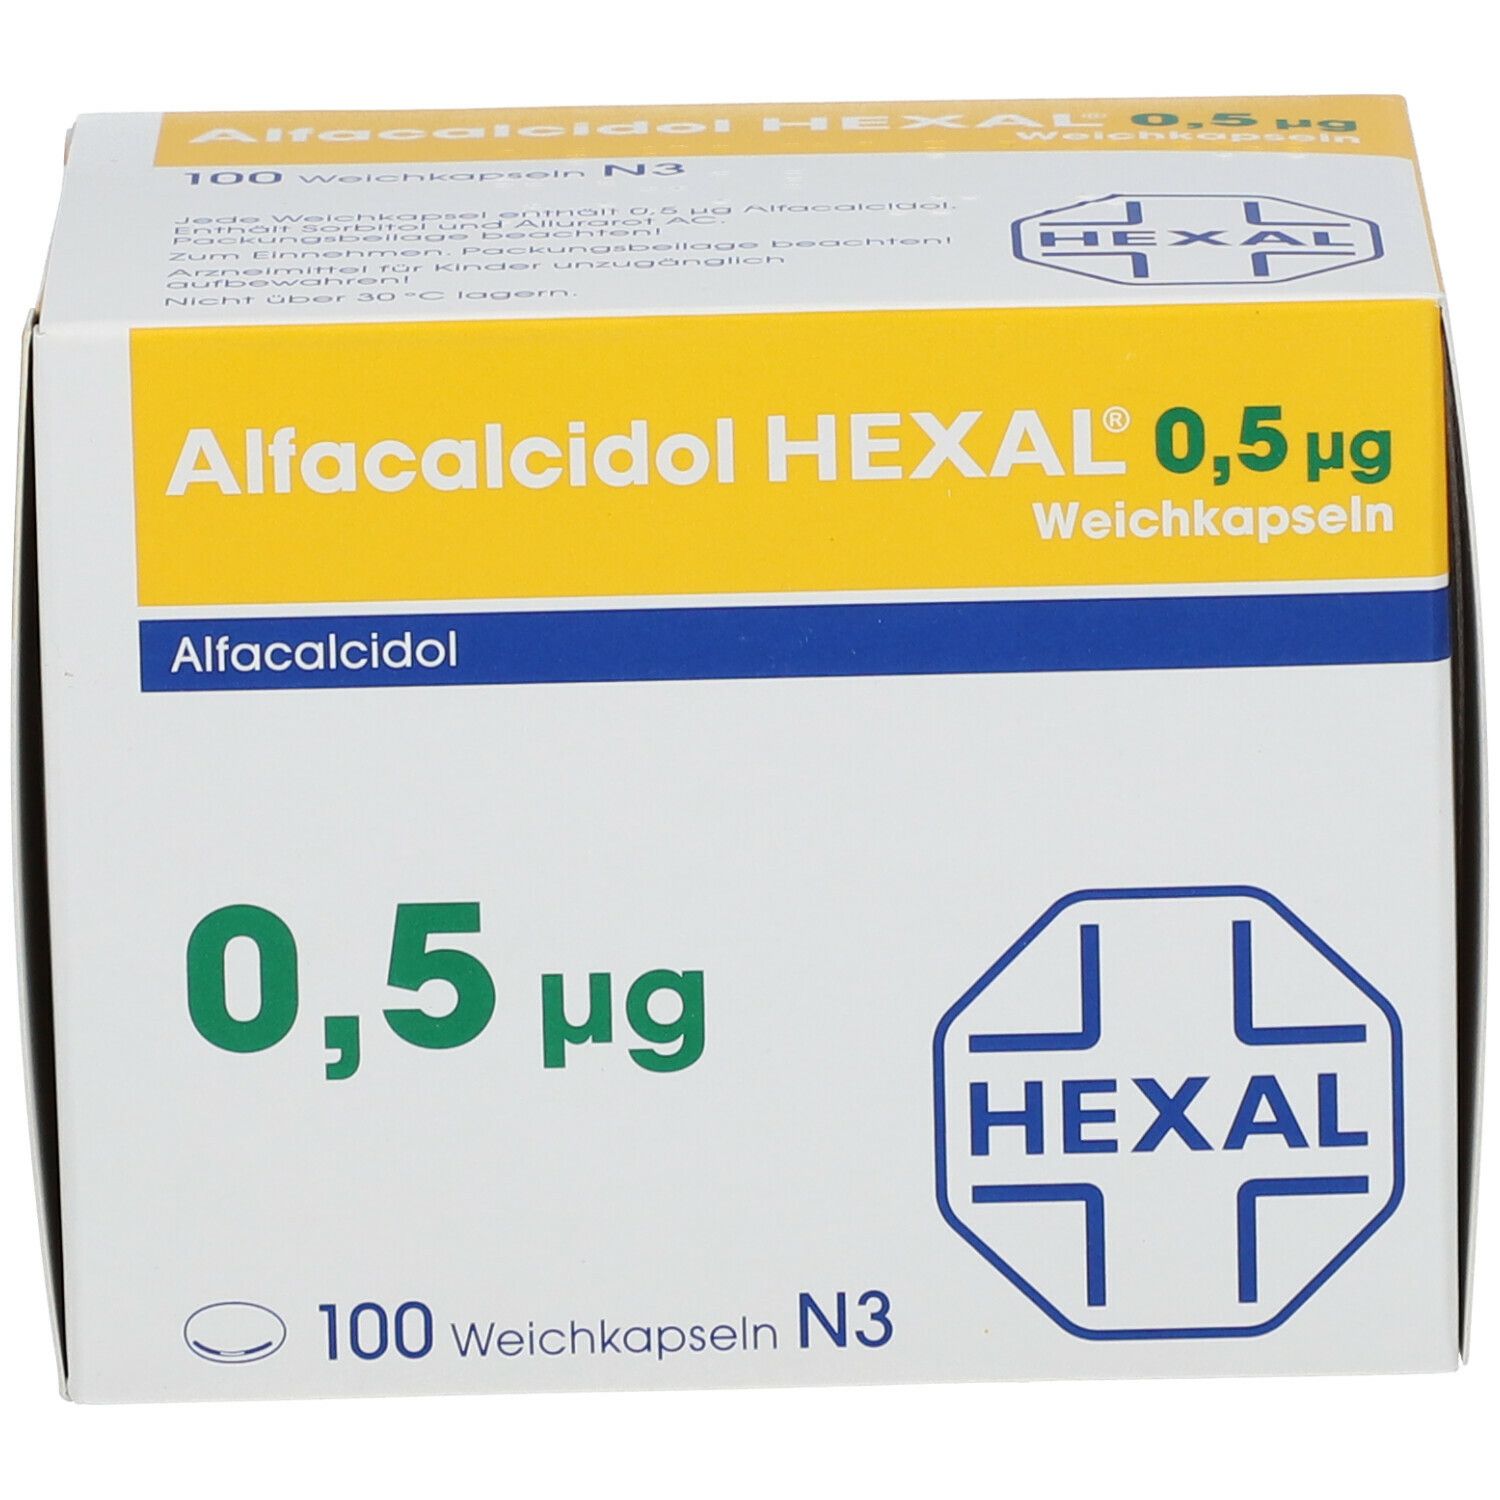 Alfacalcidol HEXAL® 0,5 µg